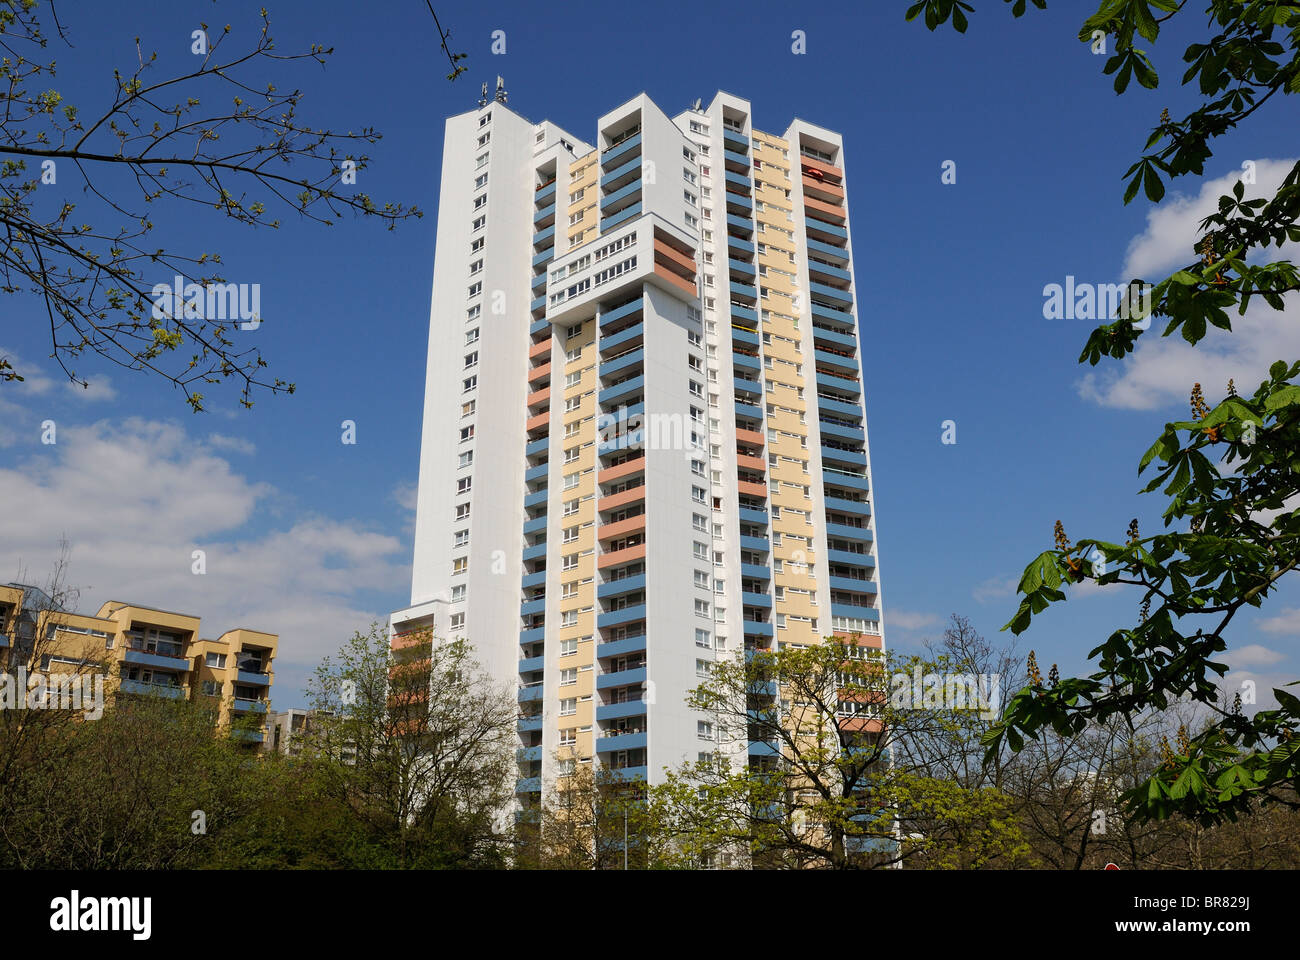 Appartement-Hochhaus von Walter Gropius, Gropiusstadt, Satelliten-Siedlungen, Neukölln, Berlin, Deutschland, Europa. Stockfoto